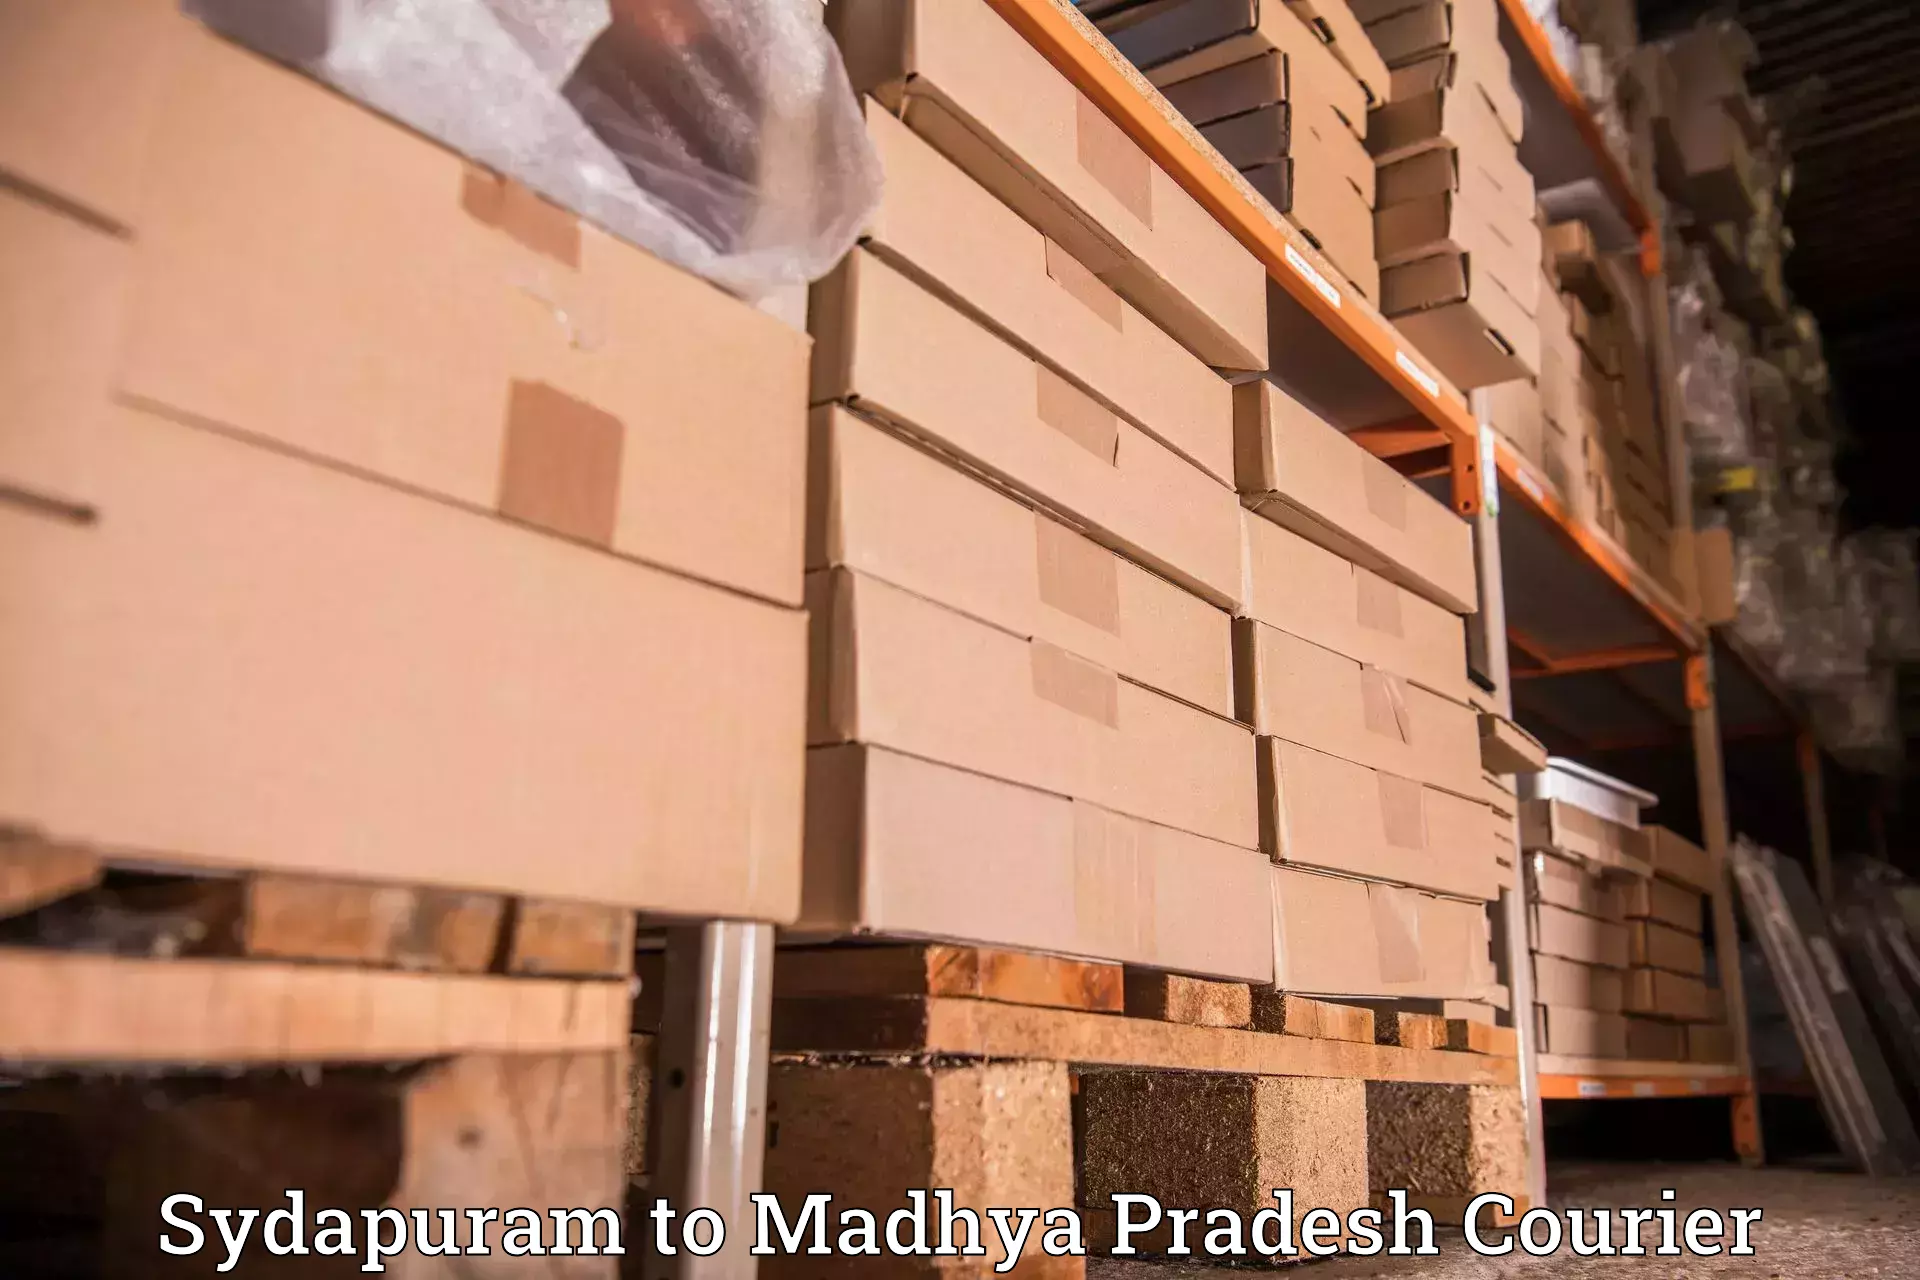 Cargo courier service Sydapuram to Datia